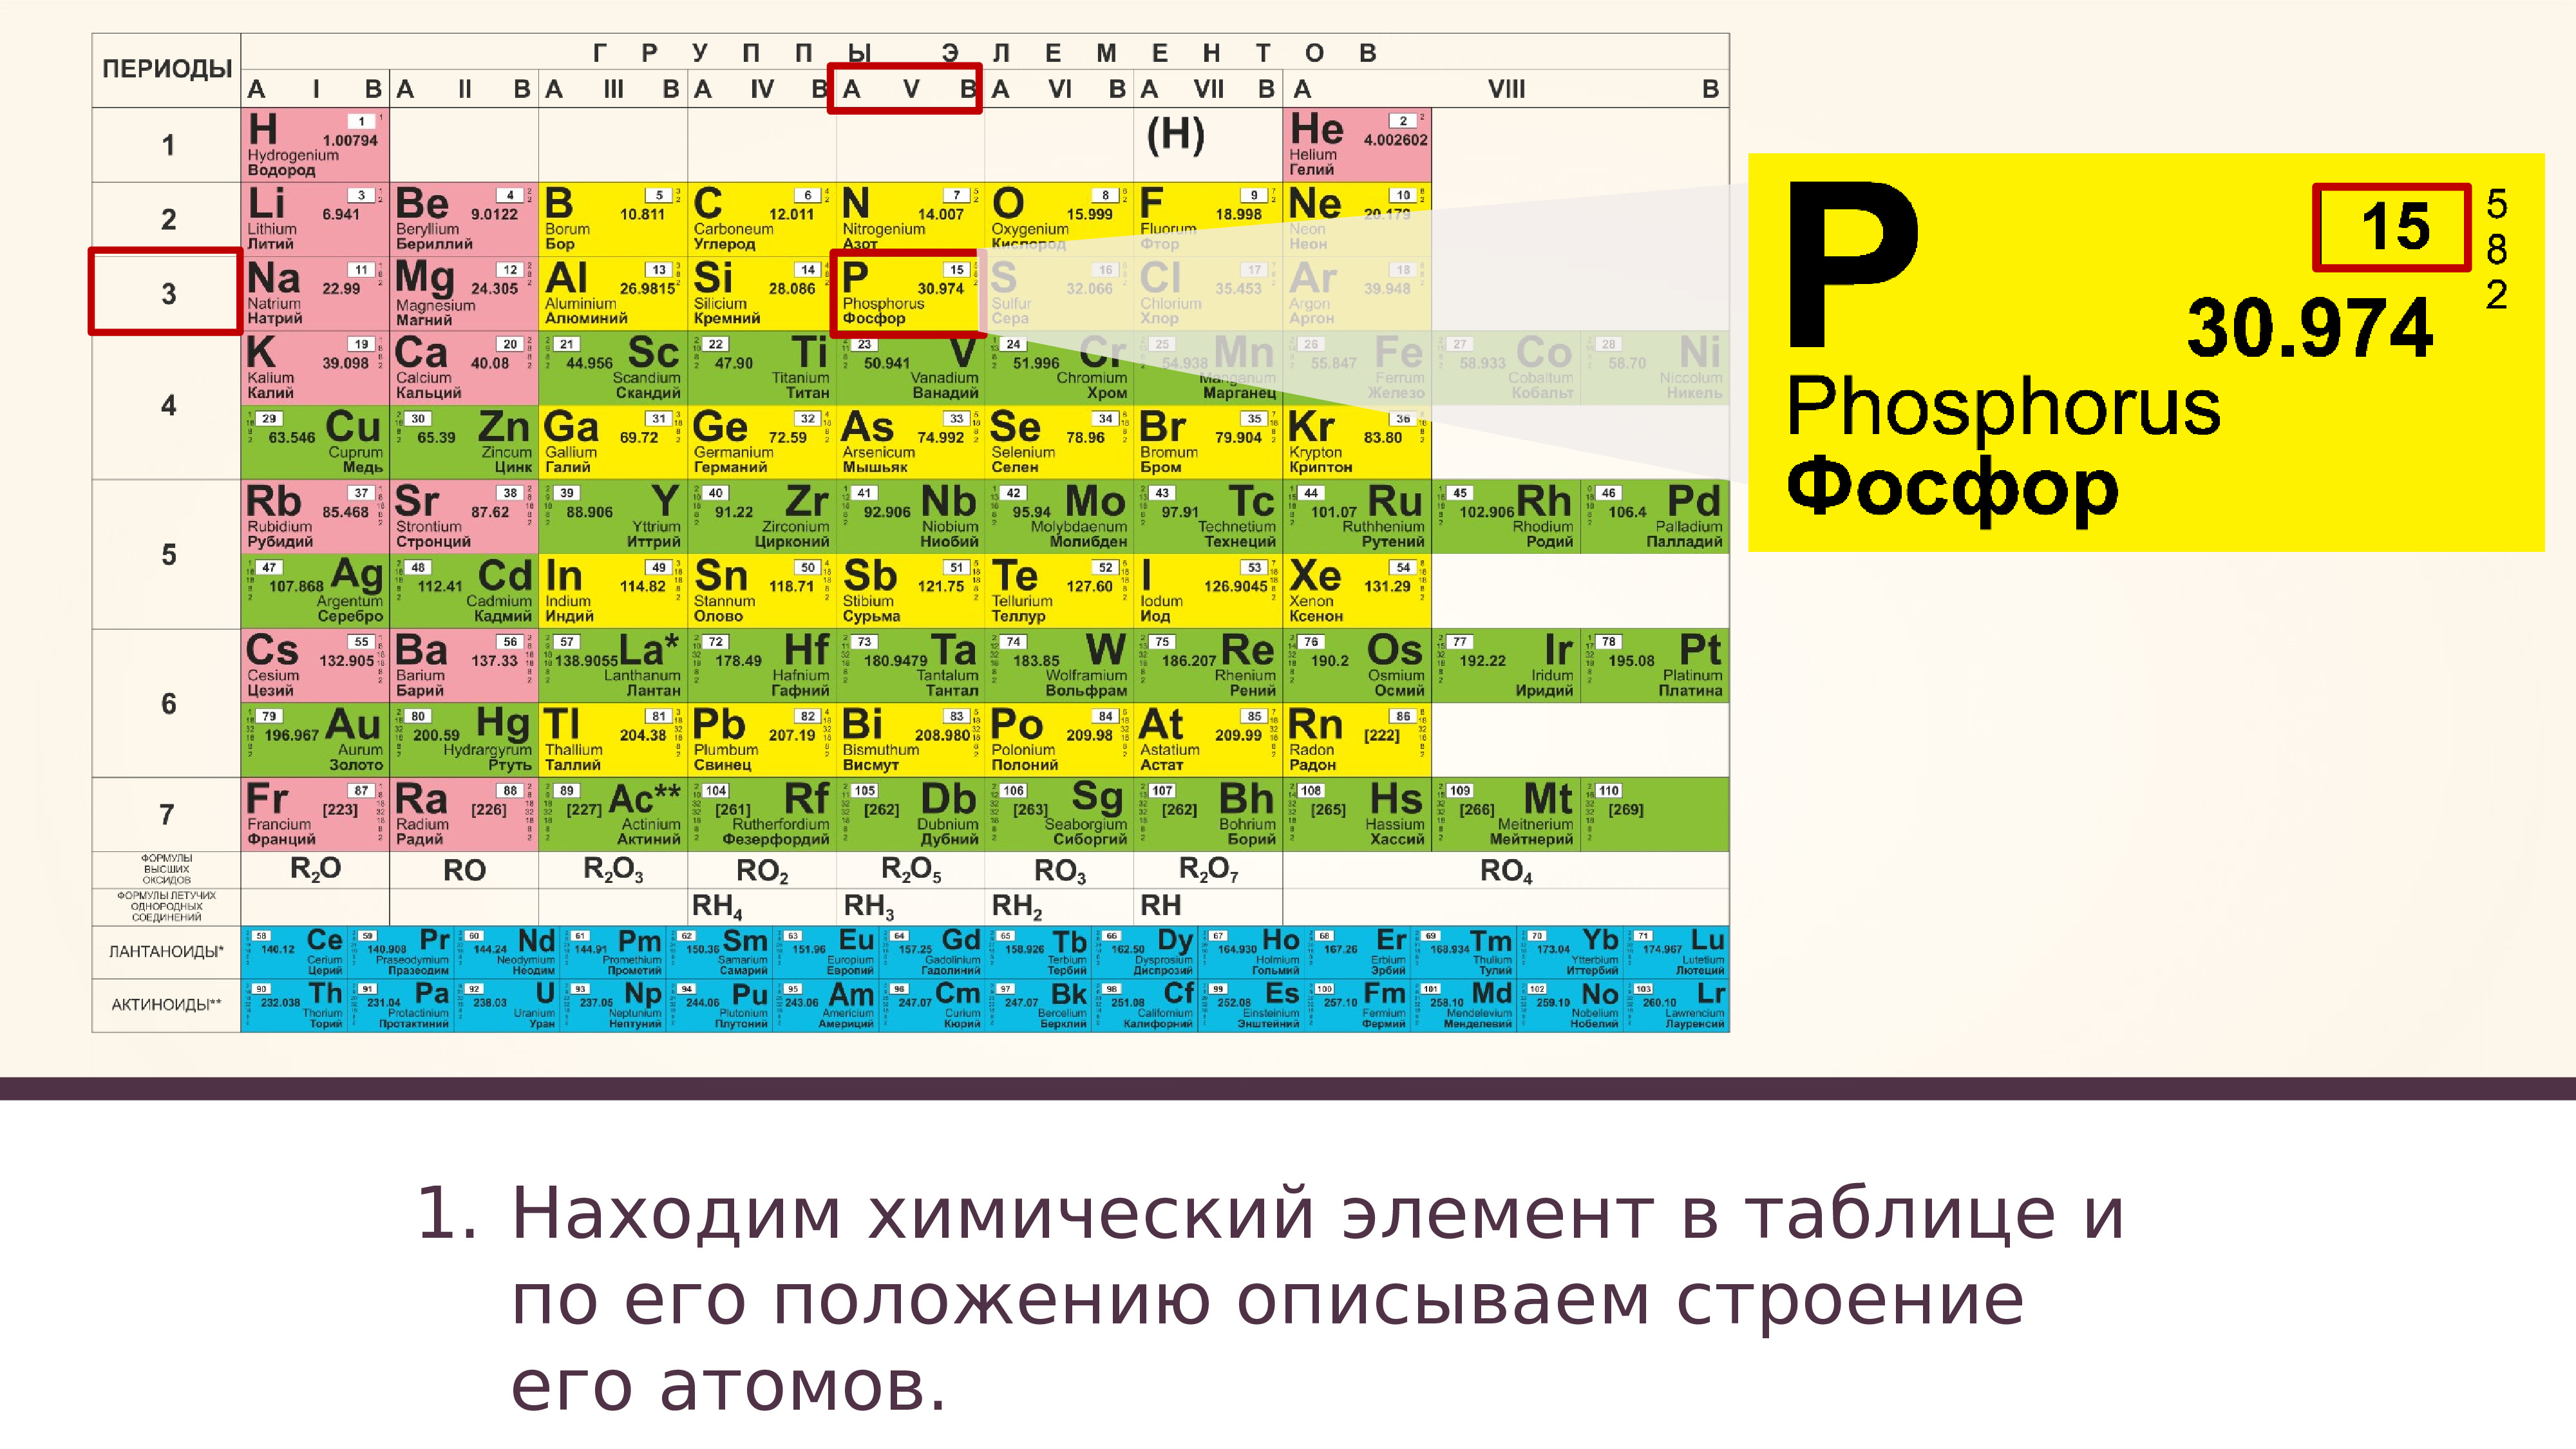 Какой последний химический элемент. Периодическая таблица Менделеева фосфор. Фосфор в таблице Менделеева. Химический элемент его положение в периодической. Фосфор химический элемент в таблице.